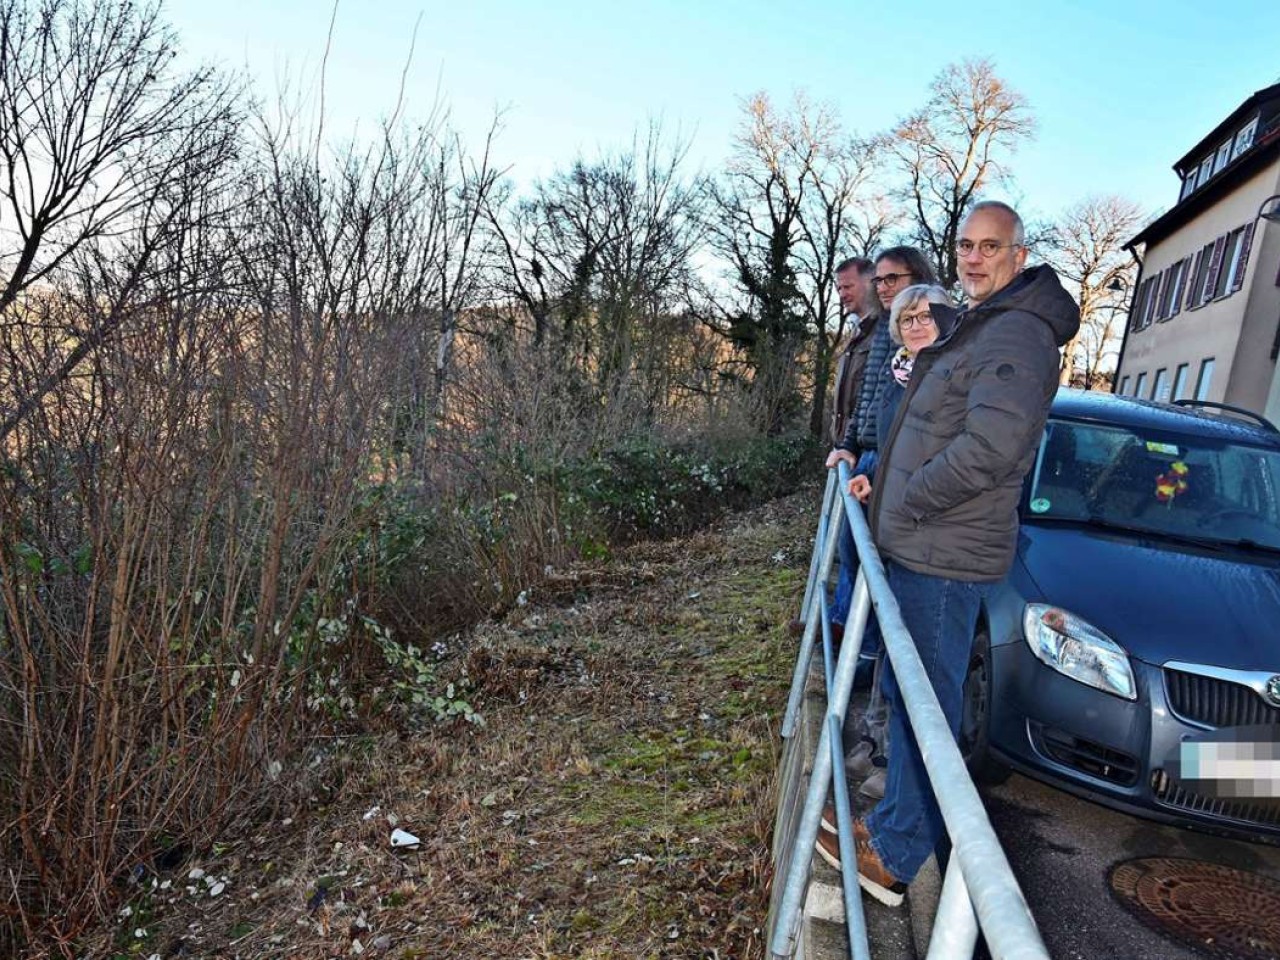 Ziegen in Rotenberg: Gestrüpp verhindert Panoramablick